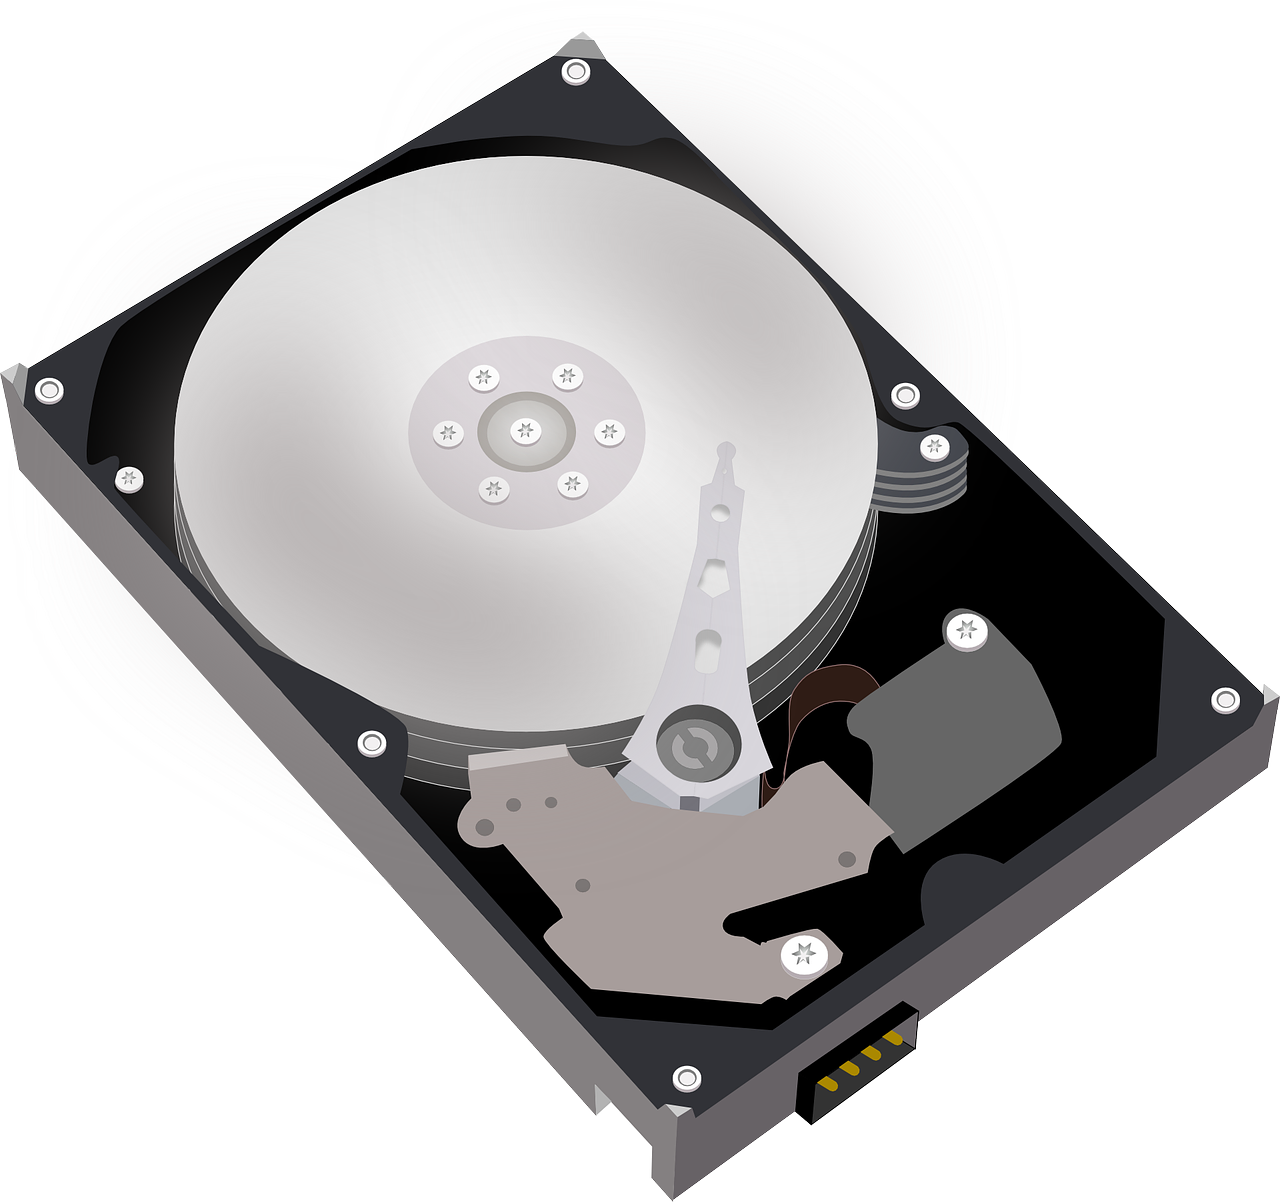 hard disk drive storage drive computer free photo